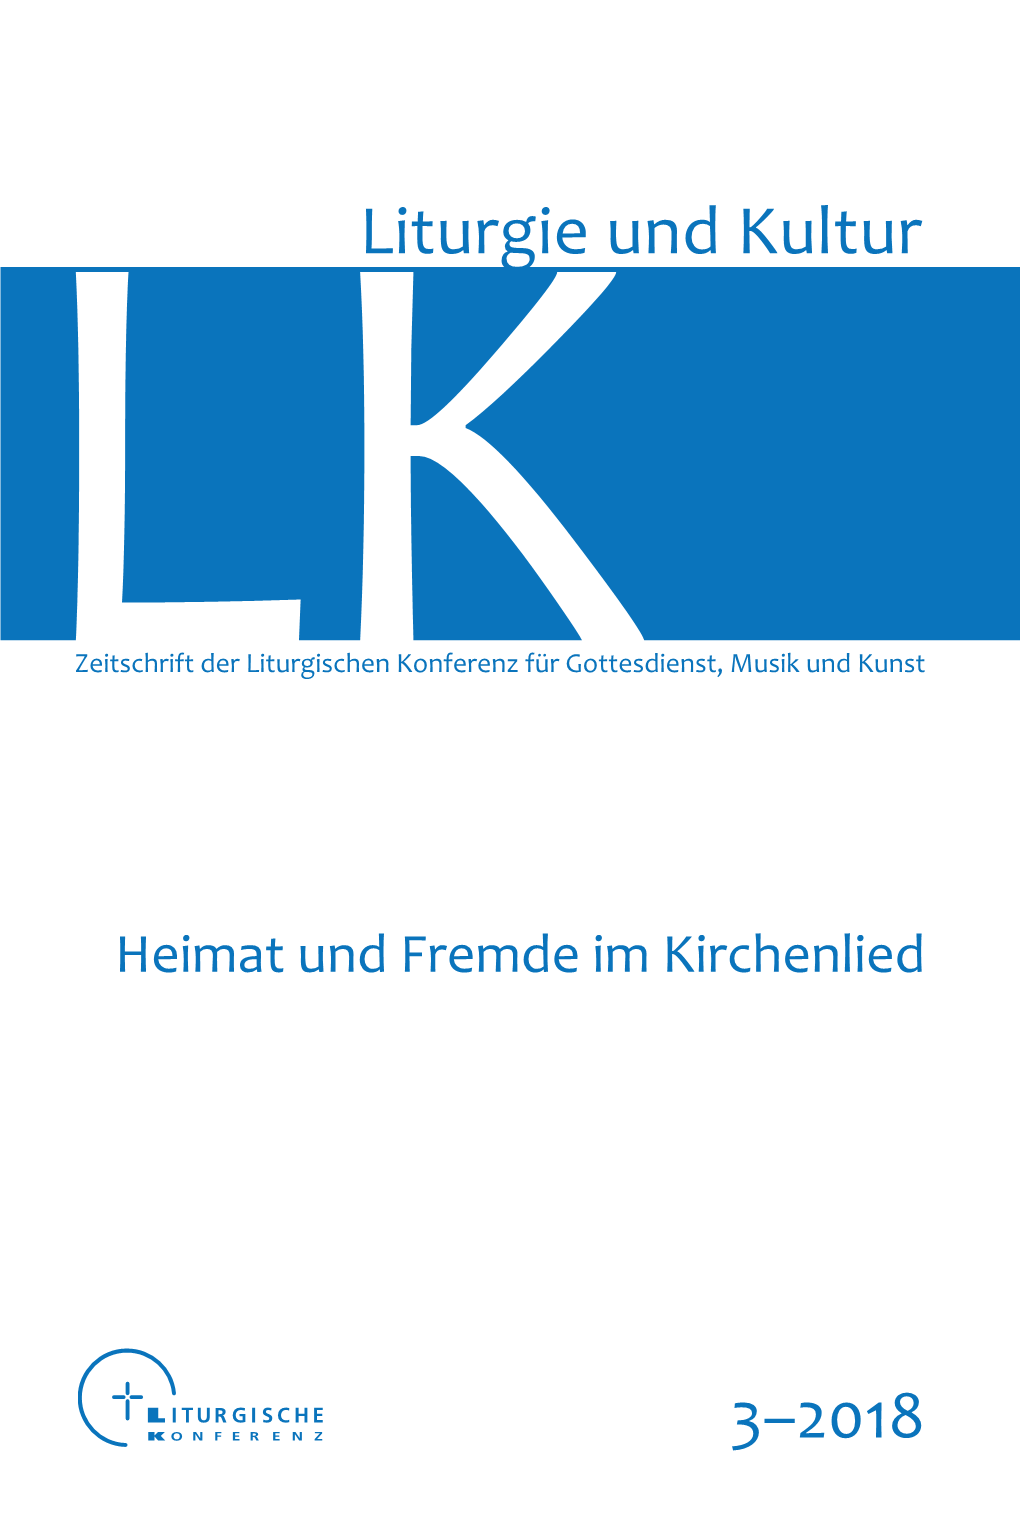 LITURGIE UND KULTUR Ansgar Franz / Julia Koll / Christian Lehnert / Chrstiane Schäfer